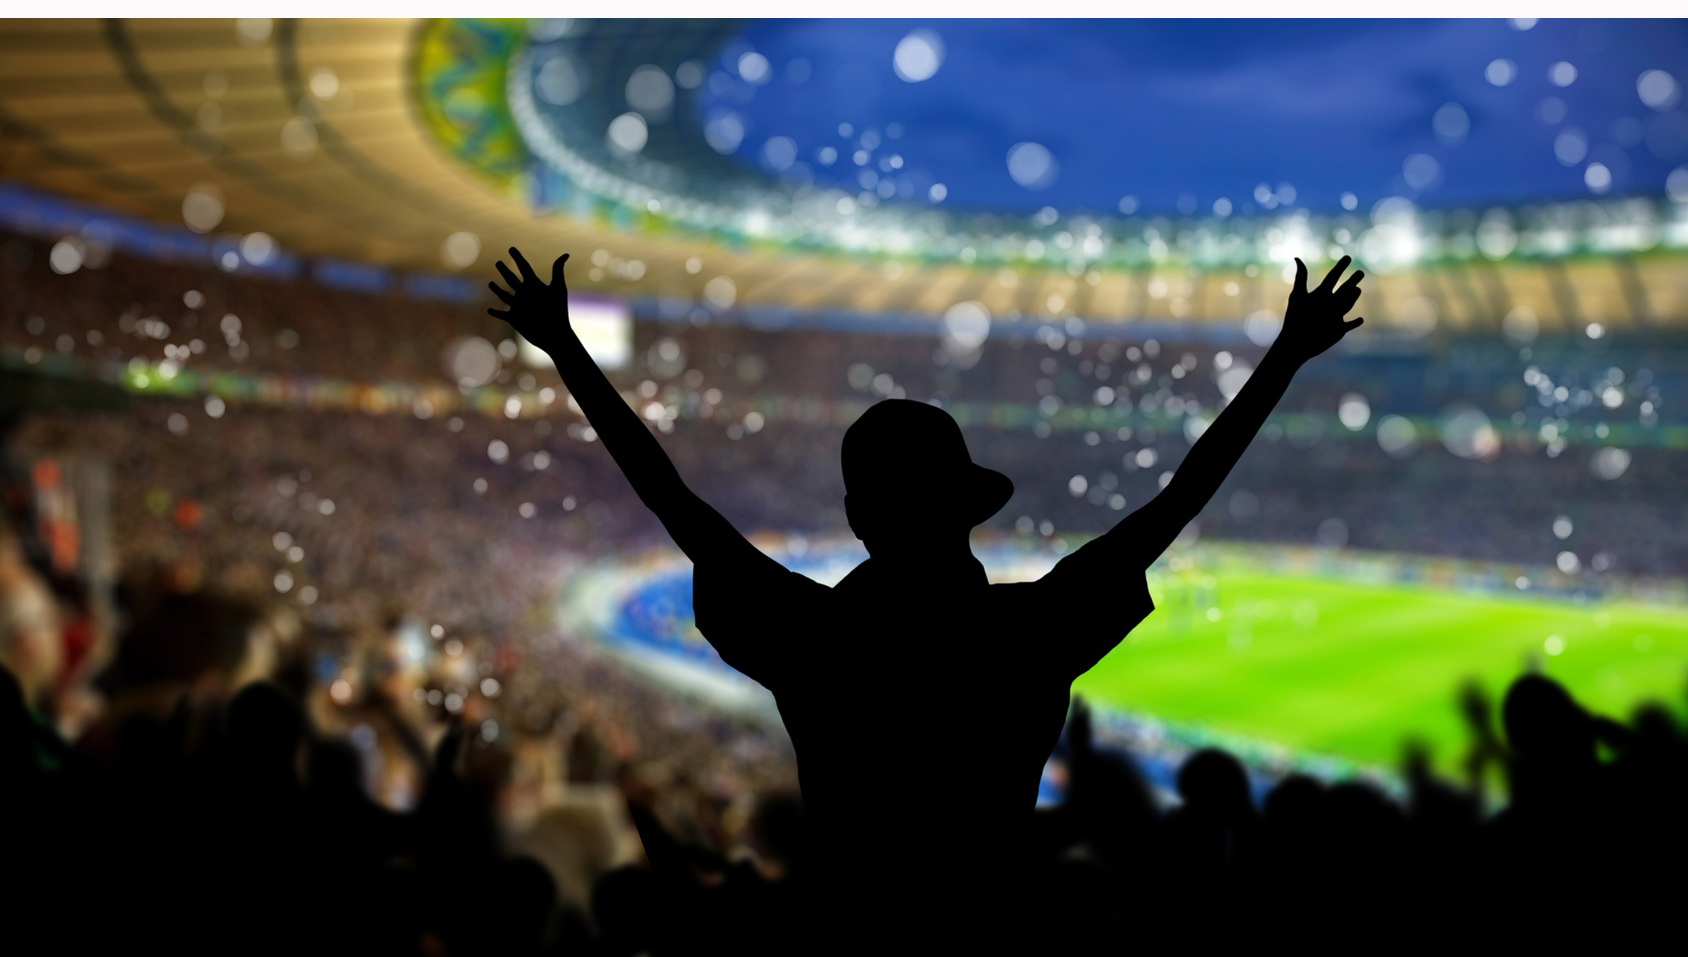 Über einen Sieg freuen sich nicht nur die Fans, sondern auch die Aktionäre - besonders, wenn ihr Verein auswärts gewinnt. Image: creativedoxfoto/ fotolia.com